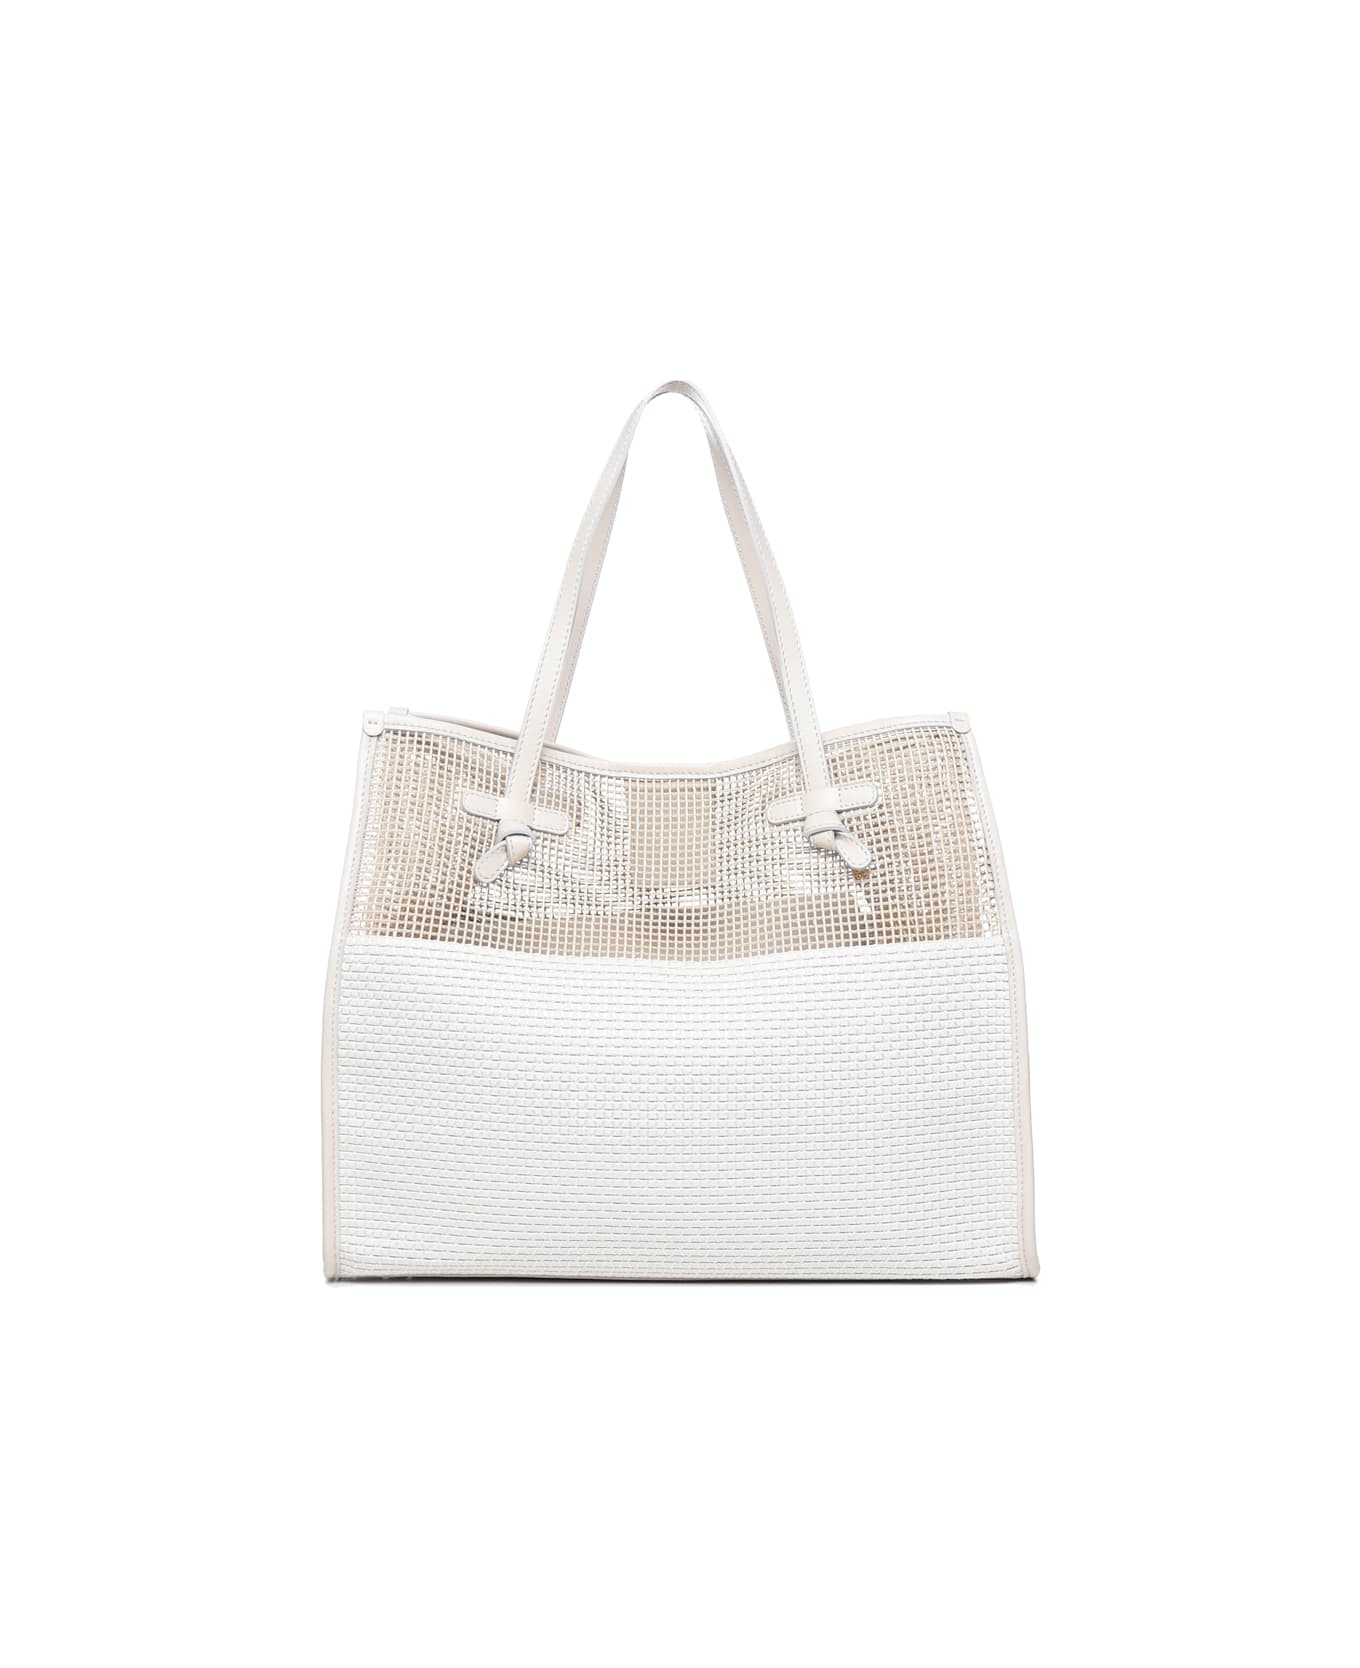 Gianni Chiarini Marcella Shopping Bag - White